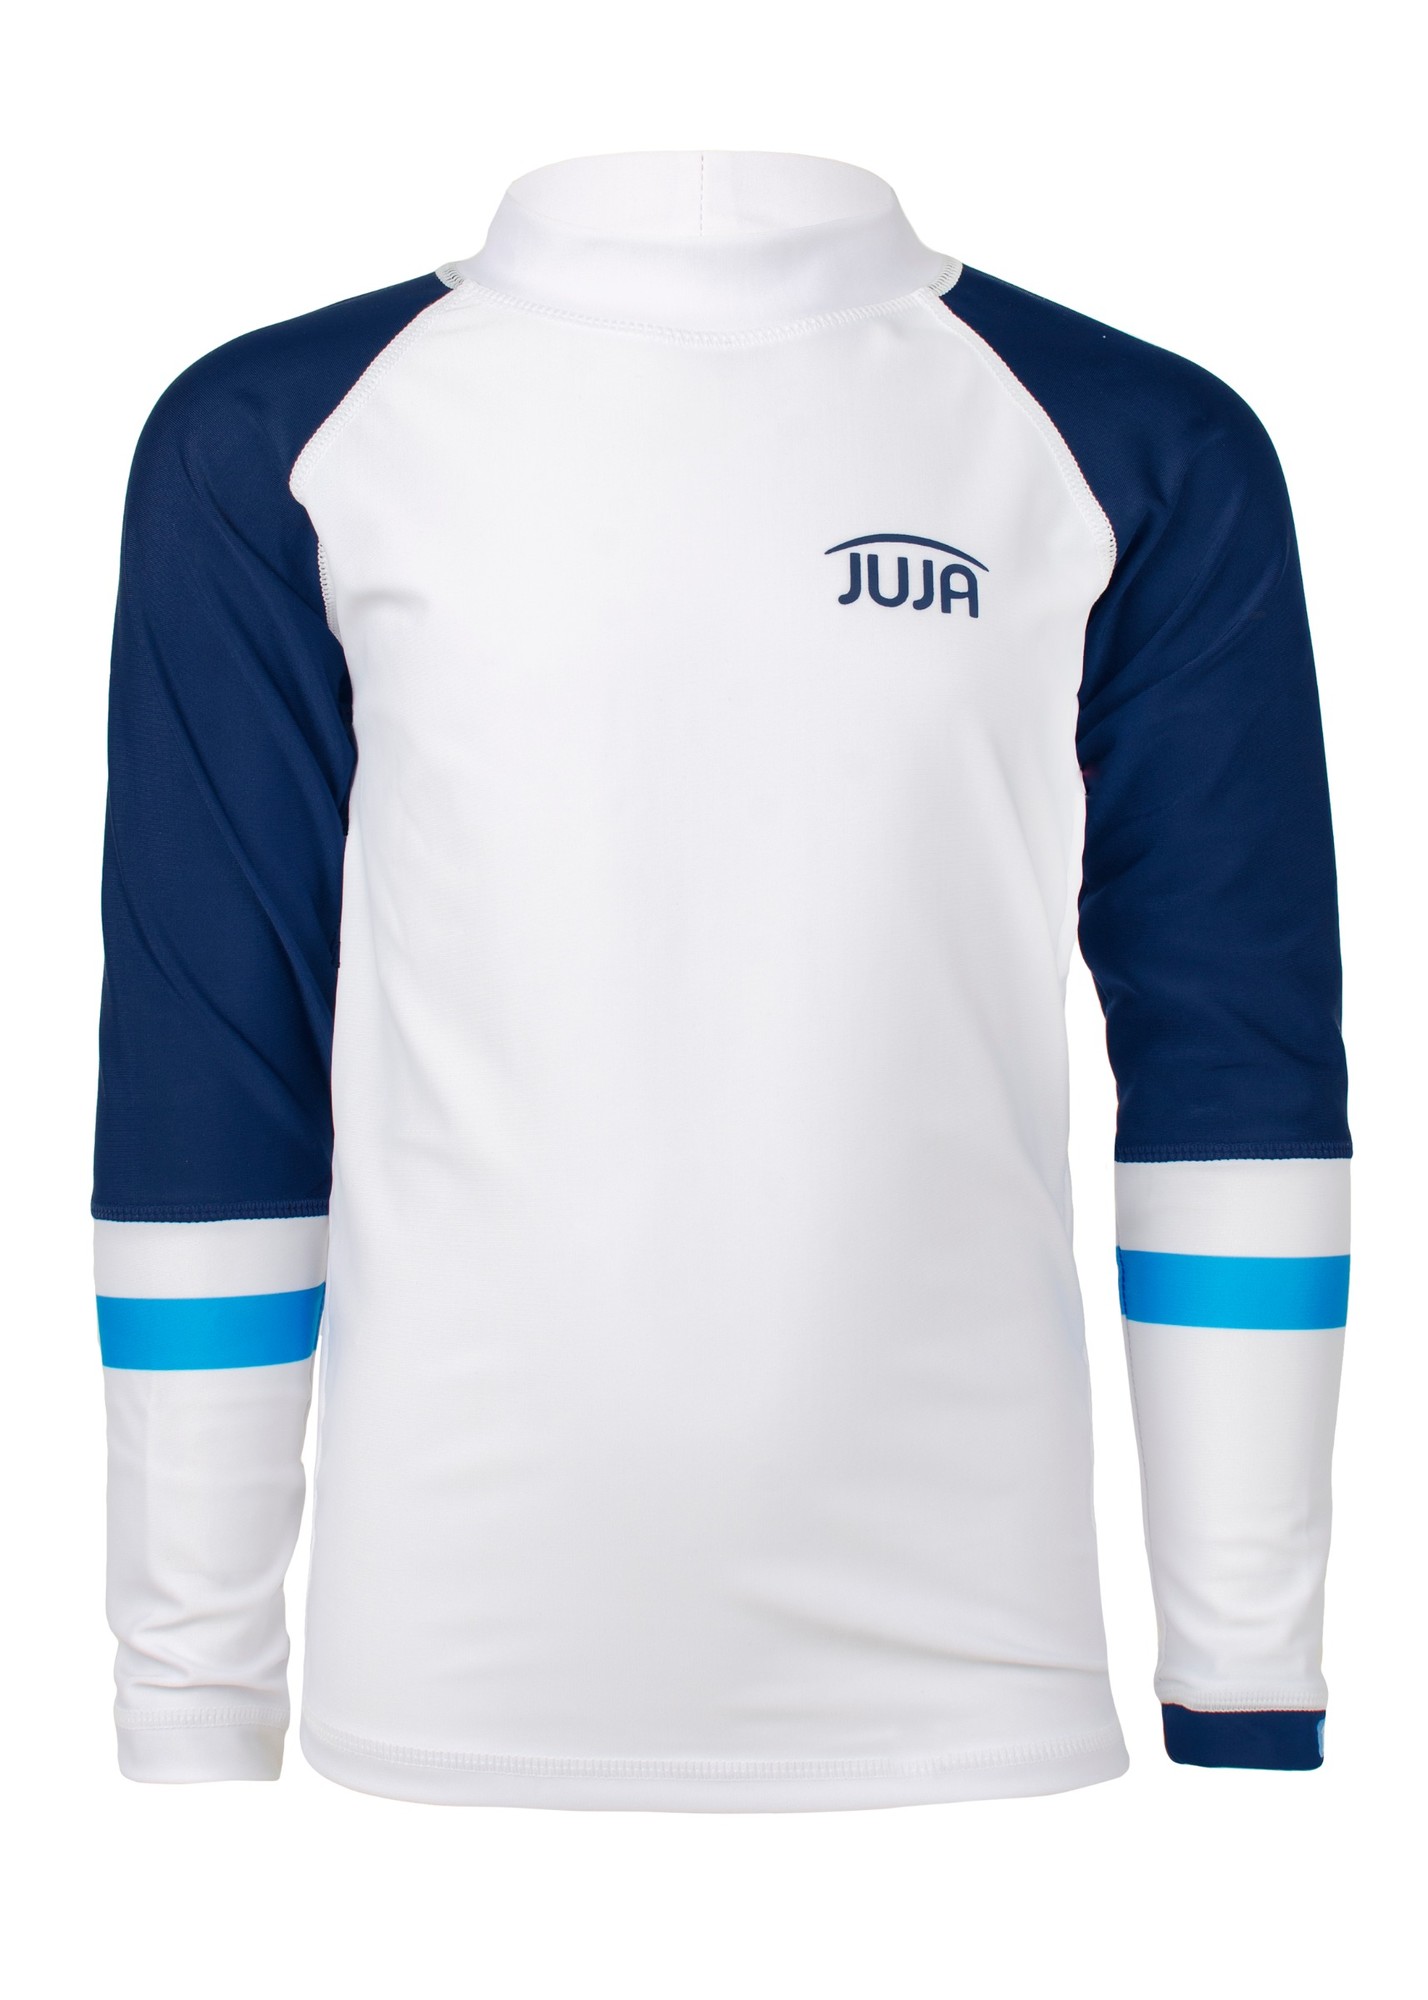 JUJA -  UV Swim shirt for boys - longsleeve - Colorblock - White